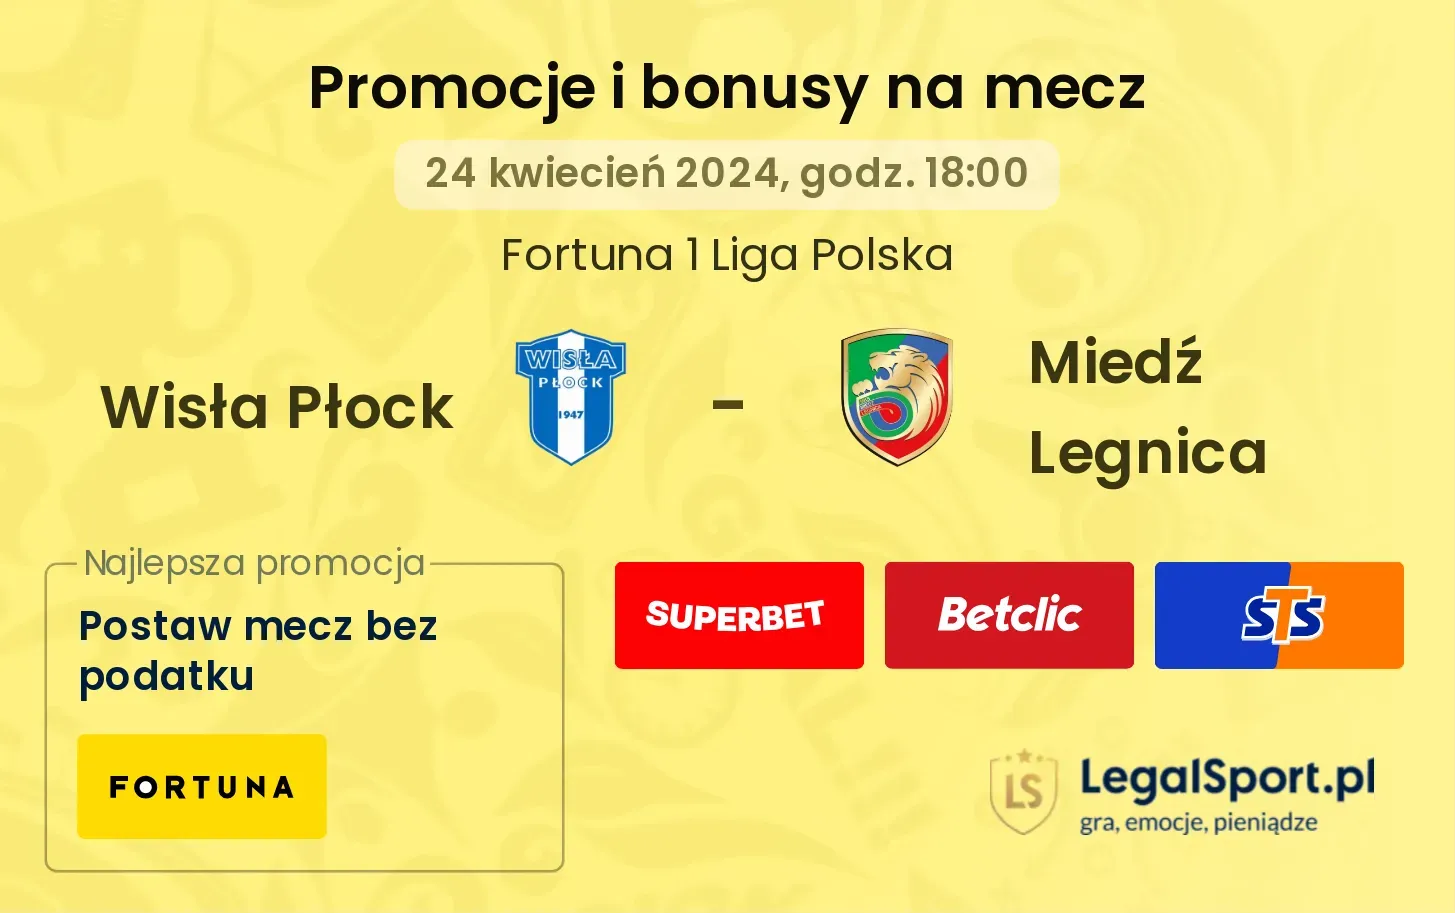 Wisła Płock - Miedź Legnica promocje bonusy na mecz